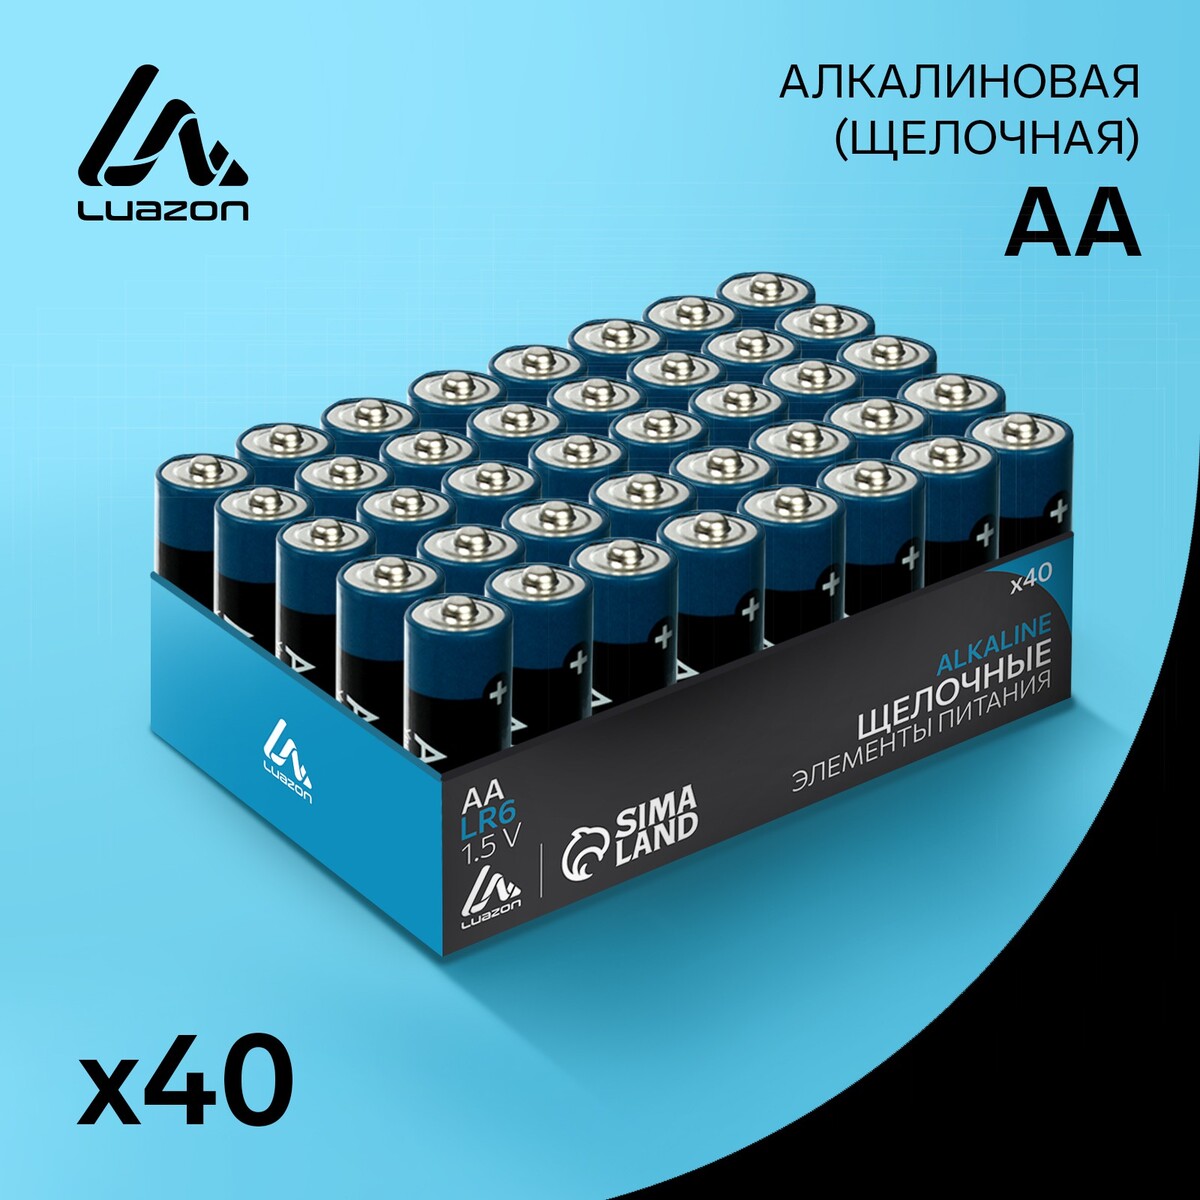 Батарейка алкалиновая (щелочная) luazon, aa, lr6, набор 40 шт батарейка ergolux ааа lr03 r3 alkaline алкалиновая 1 5 в коробка 12 шт 11745